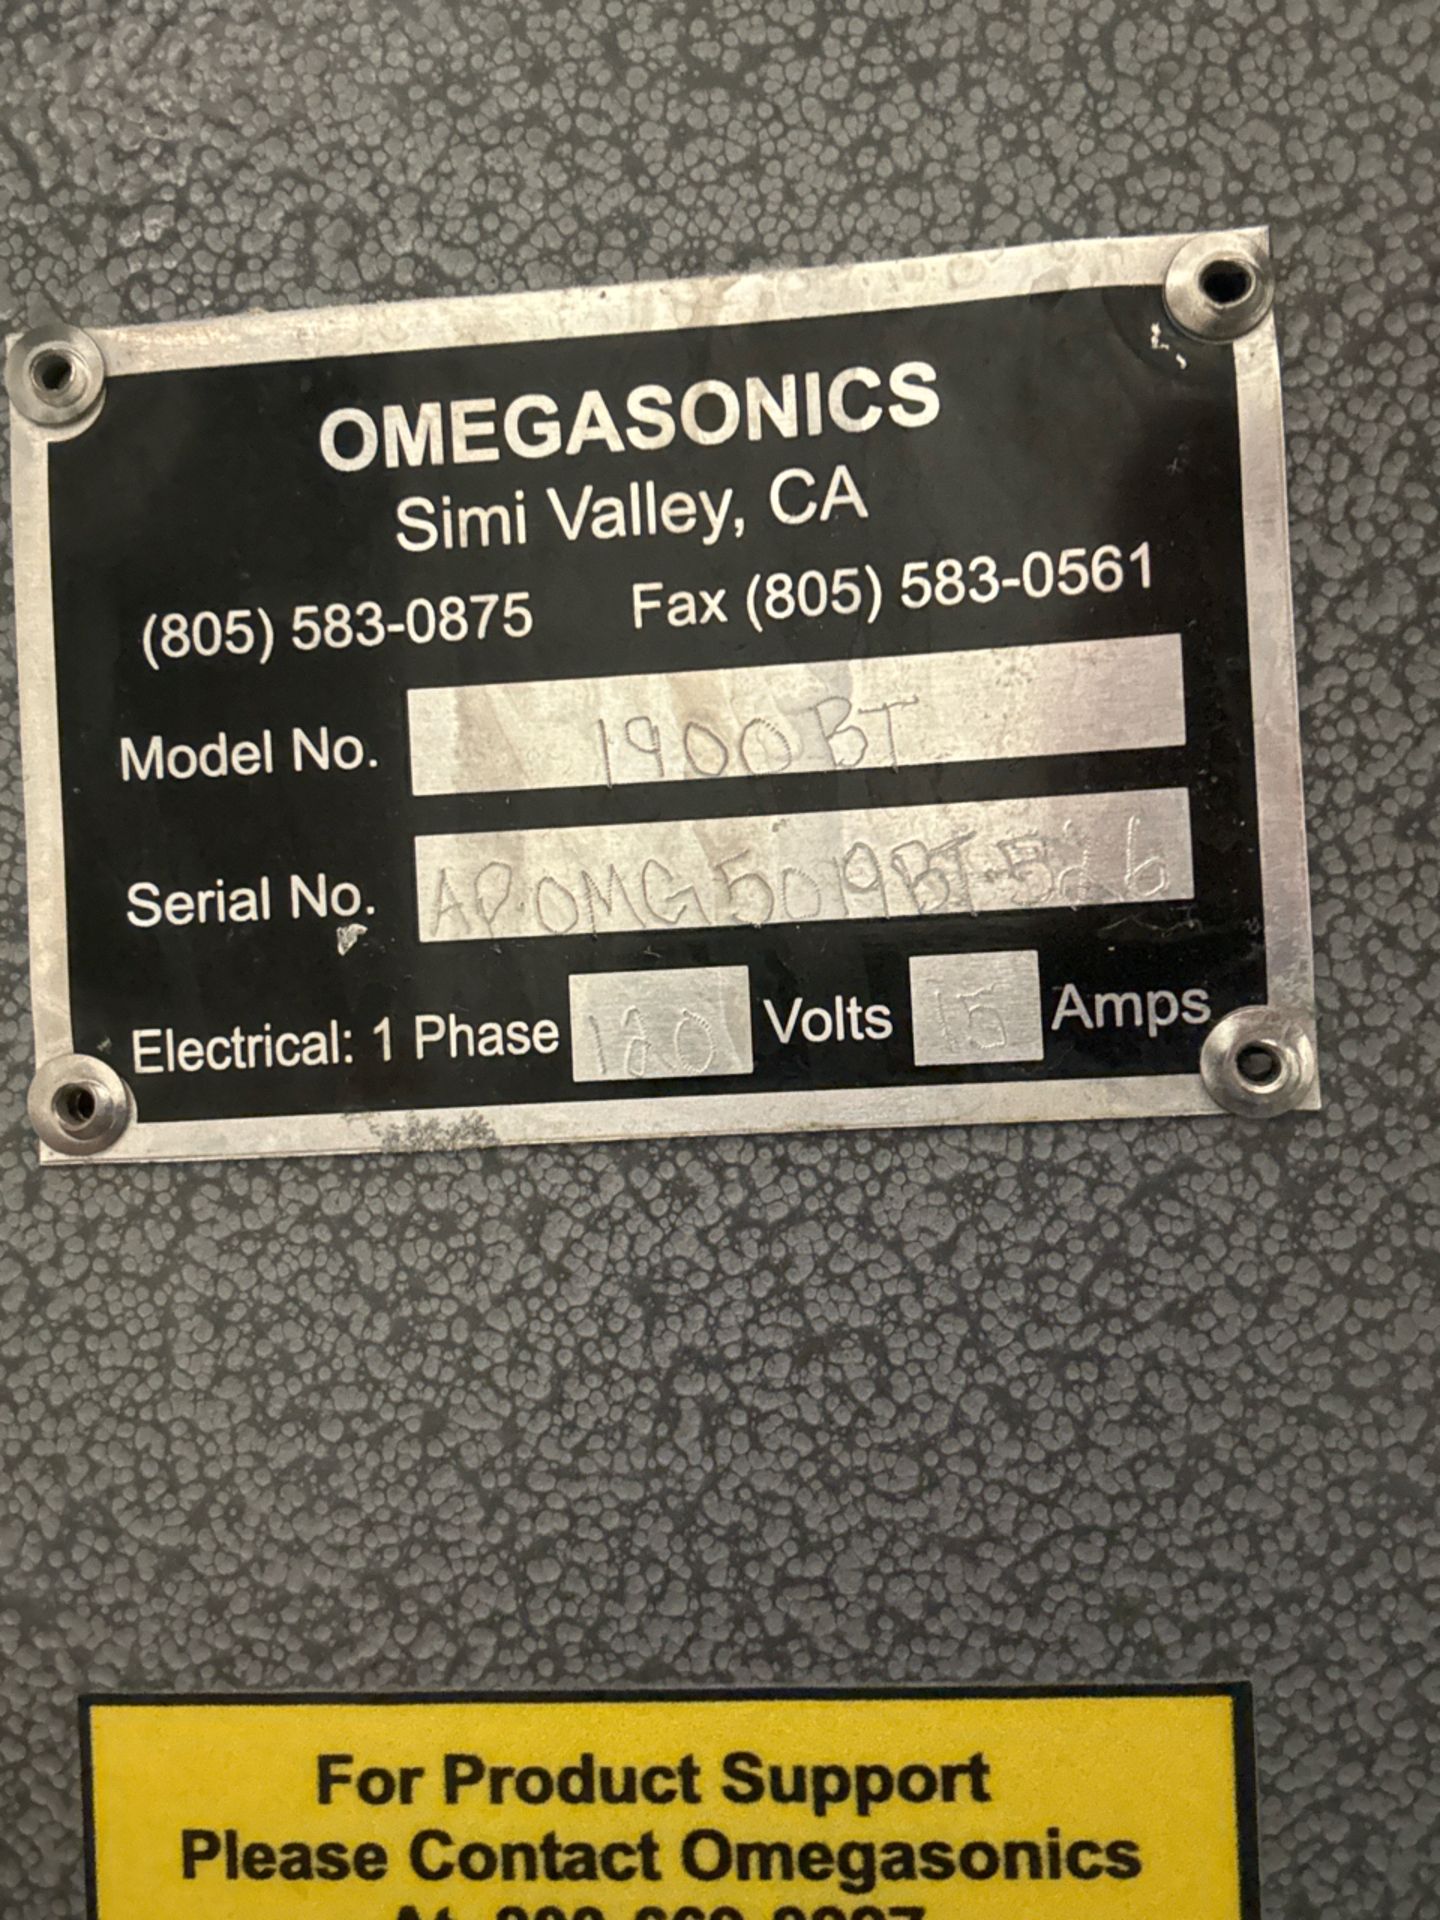 Omega Gasonics Ultrasonic Cleaner - Image 5 of 5